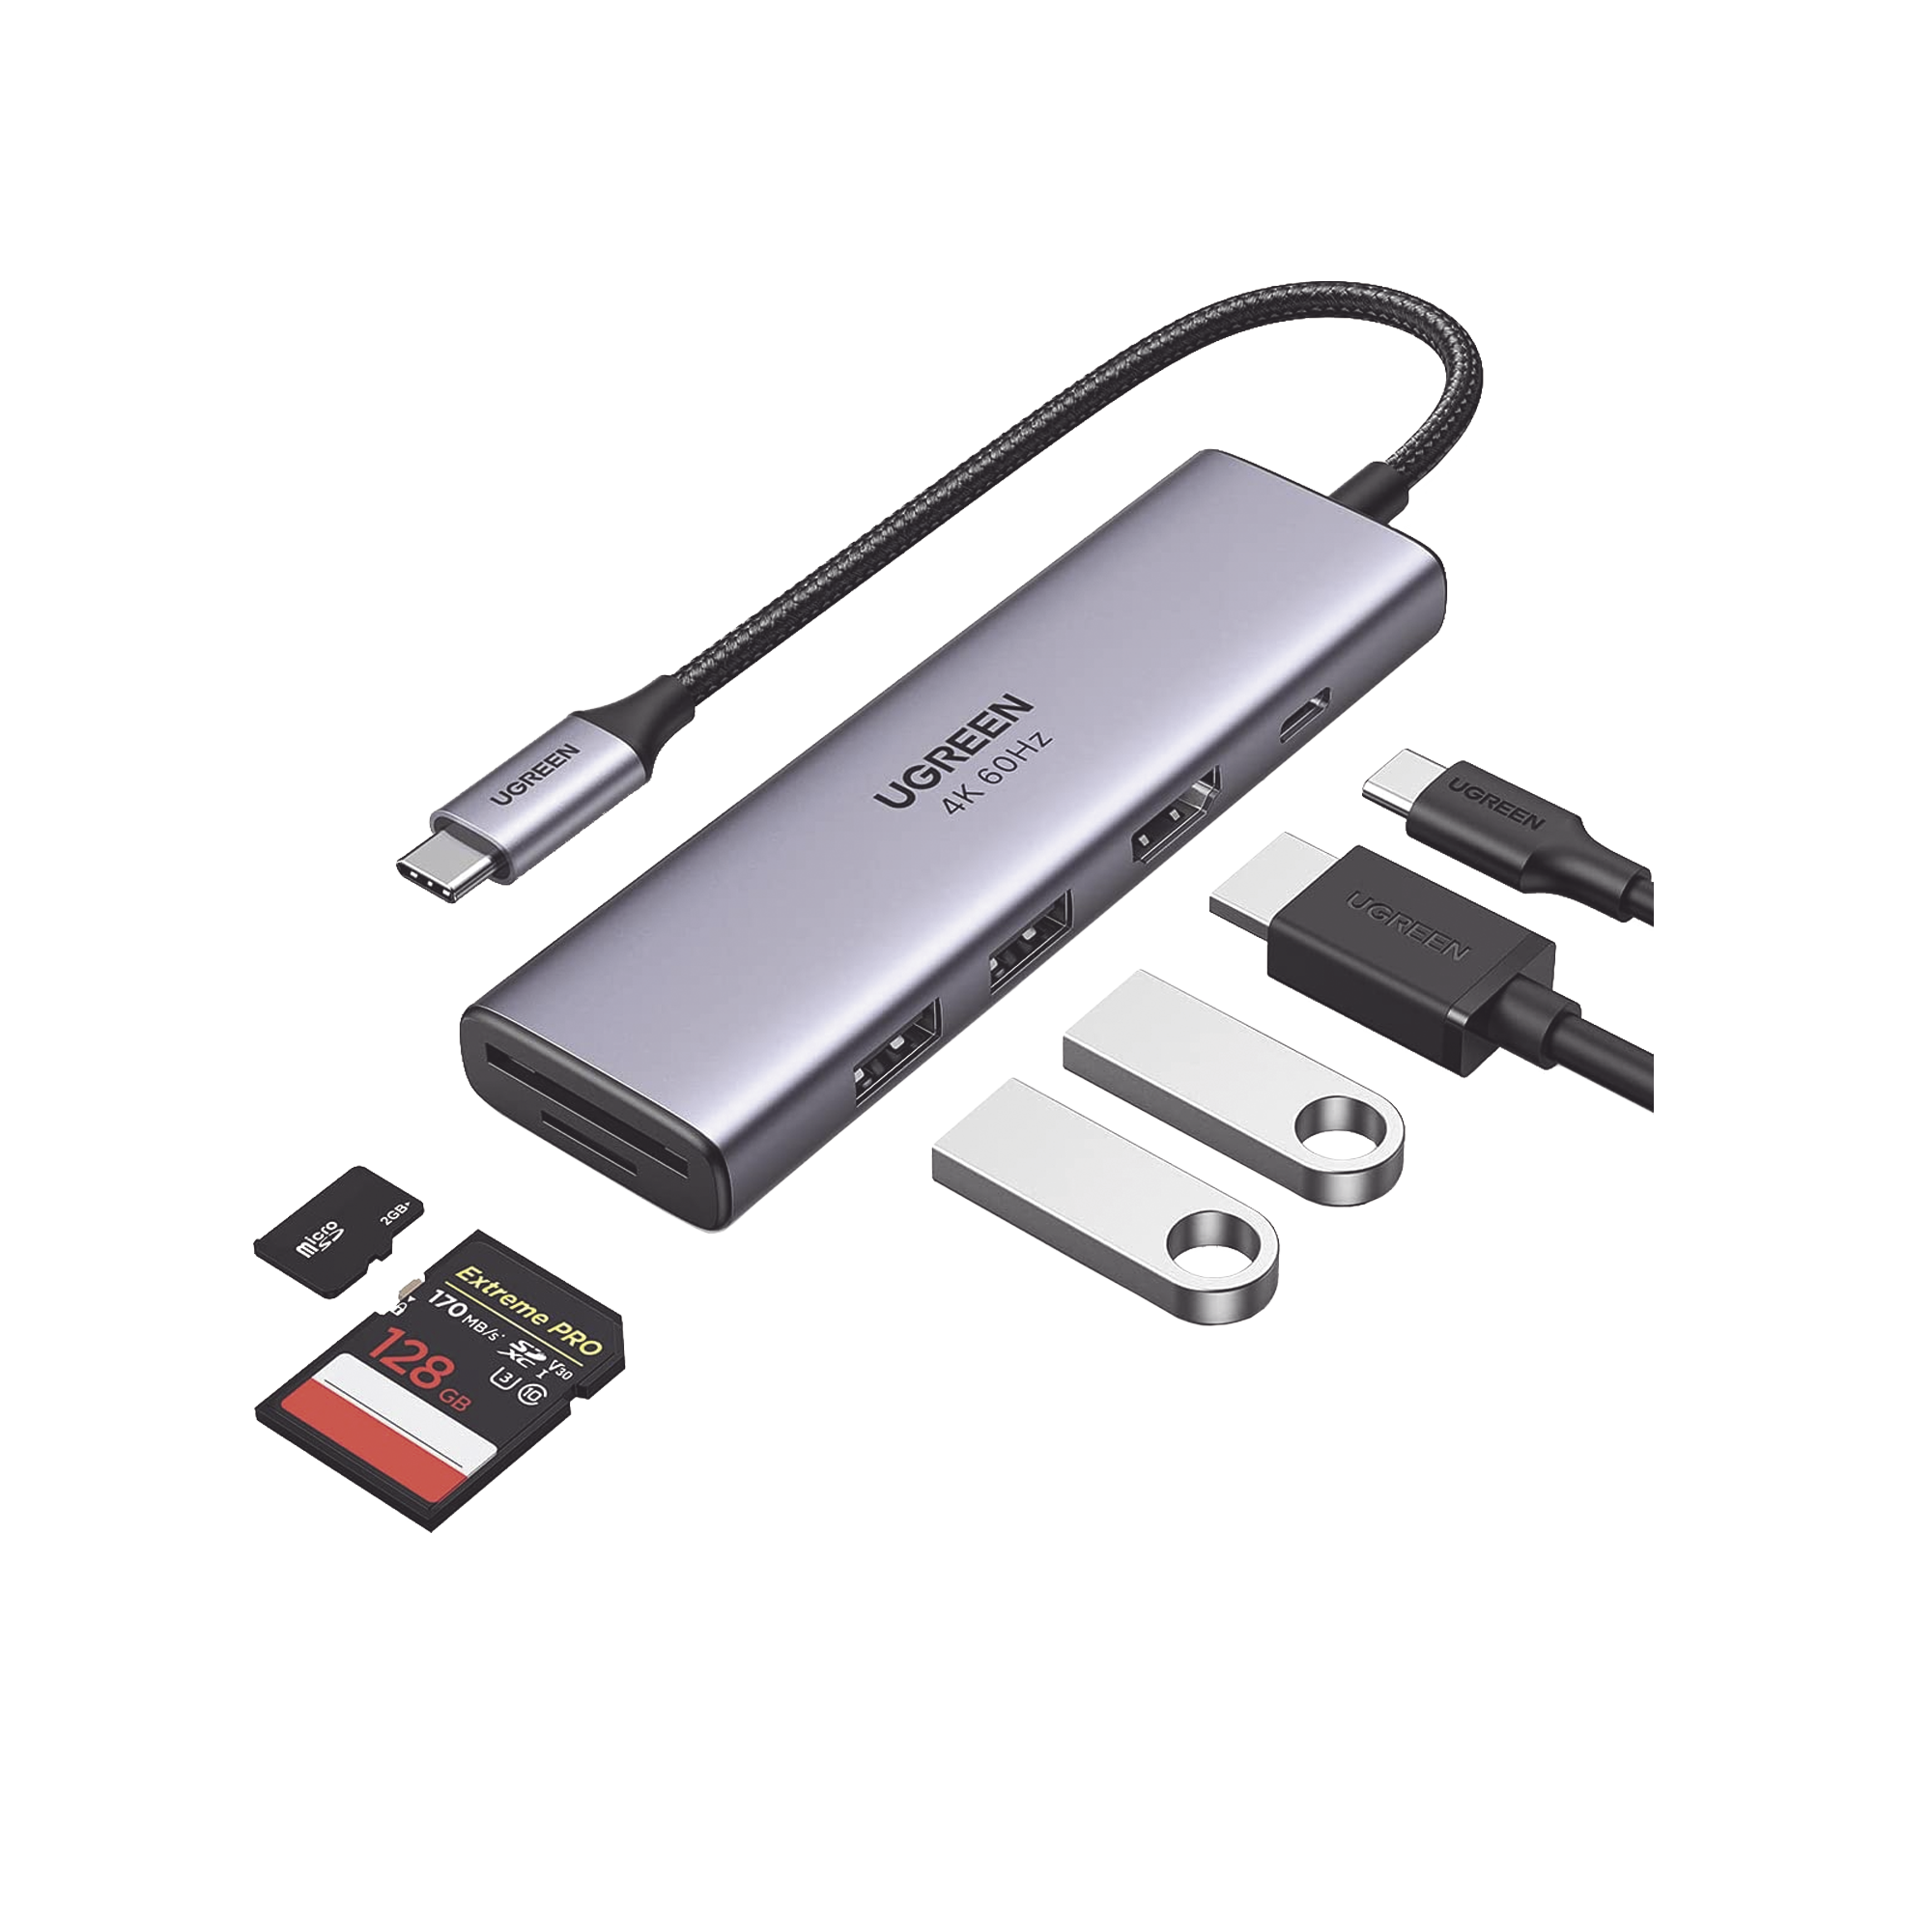 HUB USB-C Multifuncional   a  HDMI 4K@60Hz / HDCP2.2 / HDR10/3D / 2 Puertos USB3.0 / Lector de Tarjetas SD+TF (Uso Simultáneo) / USB C PD 100W / 6 en 1